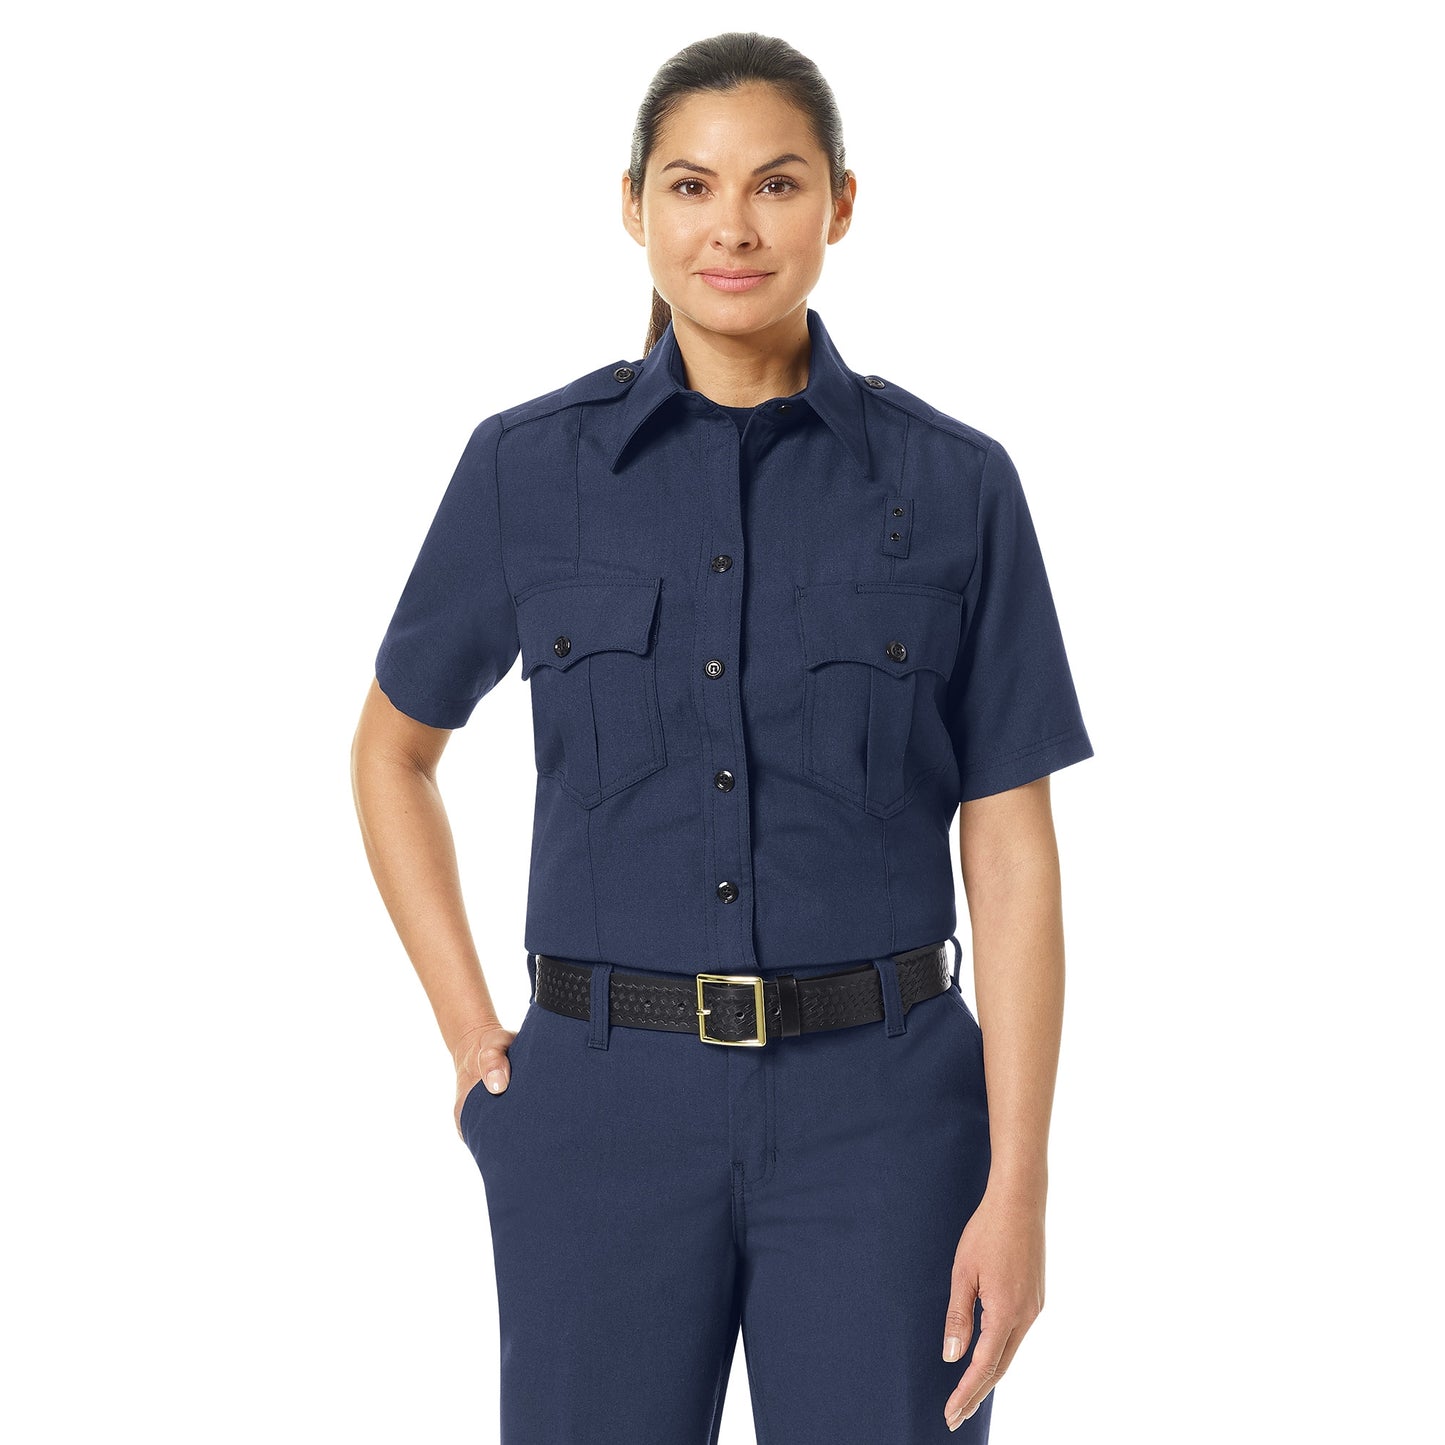 Women's Classic Fire Officer Shirt